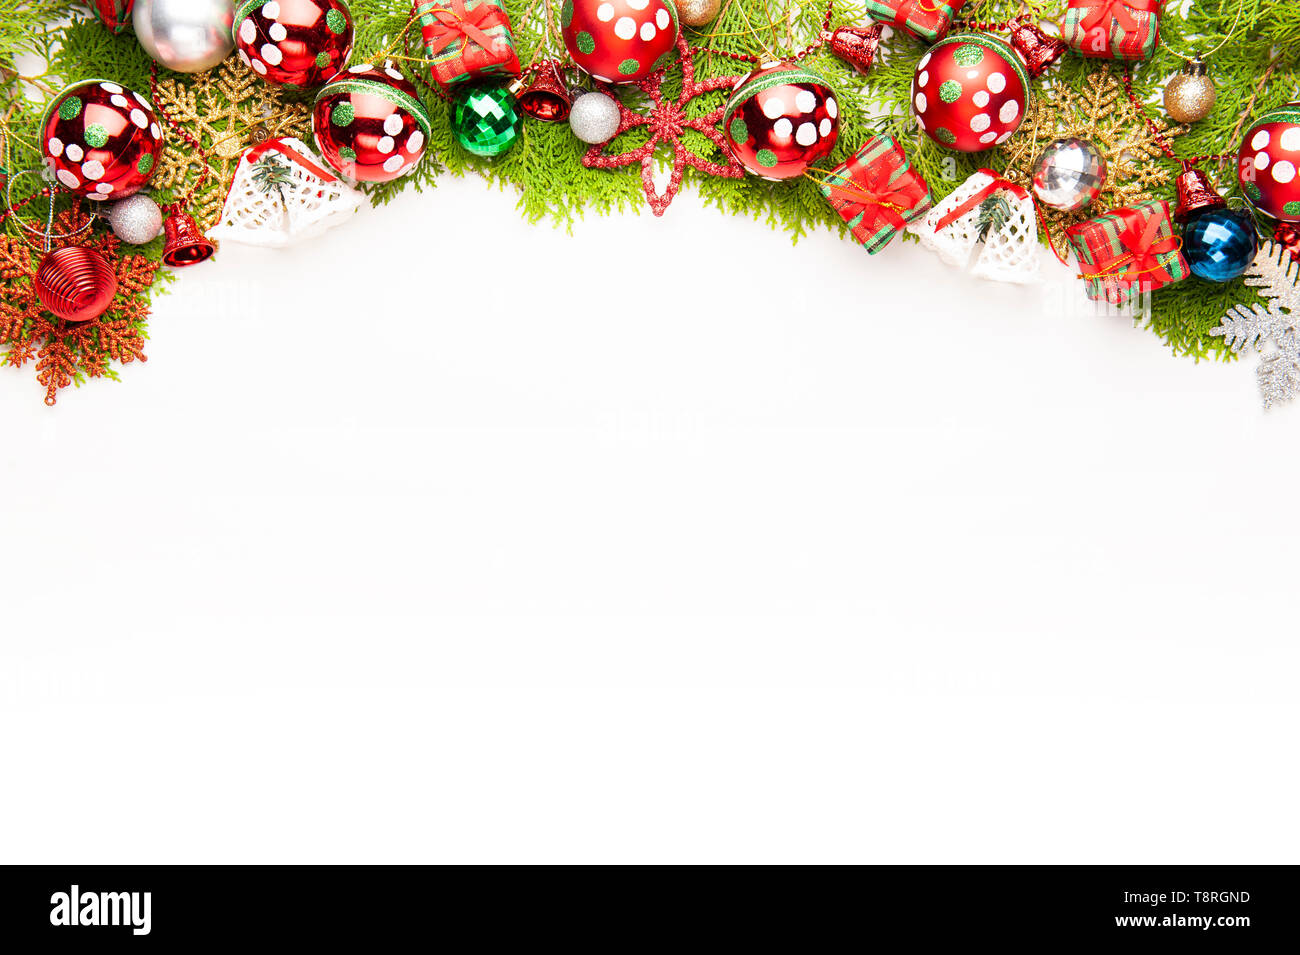 Giáng sinh nền trắng tạo cho hình ảnh một không gian khơi nguồn cảm hứng, ấm áp và hiện đại. Chỉ cần một ít màu sắc và những chi tiết đơn giản, bạn có thể thiết kế một bộ trang trí Giáng sinh đầy phong cách trên nền trắng. Hãy cùng khám phá những gợi ý thiết kế đầy tinh tế và sang trọng trên nền trắng trong mùa Giáng sinh này nhé!